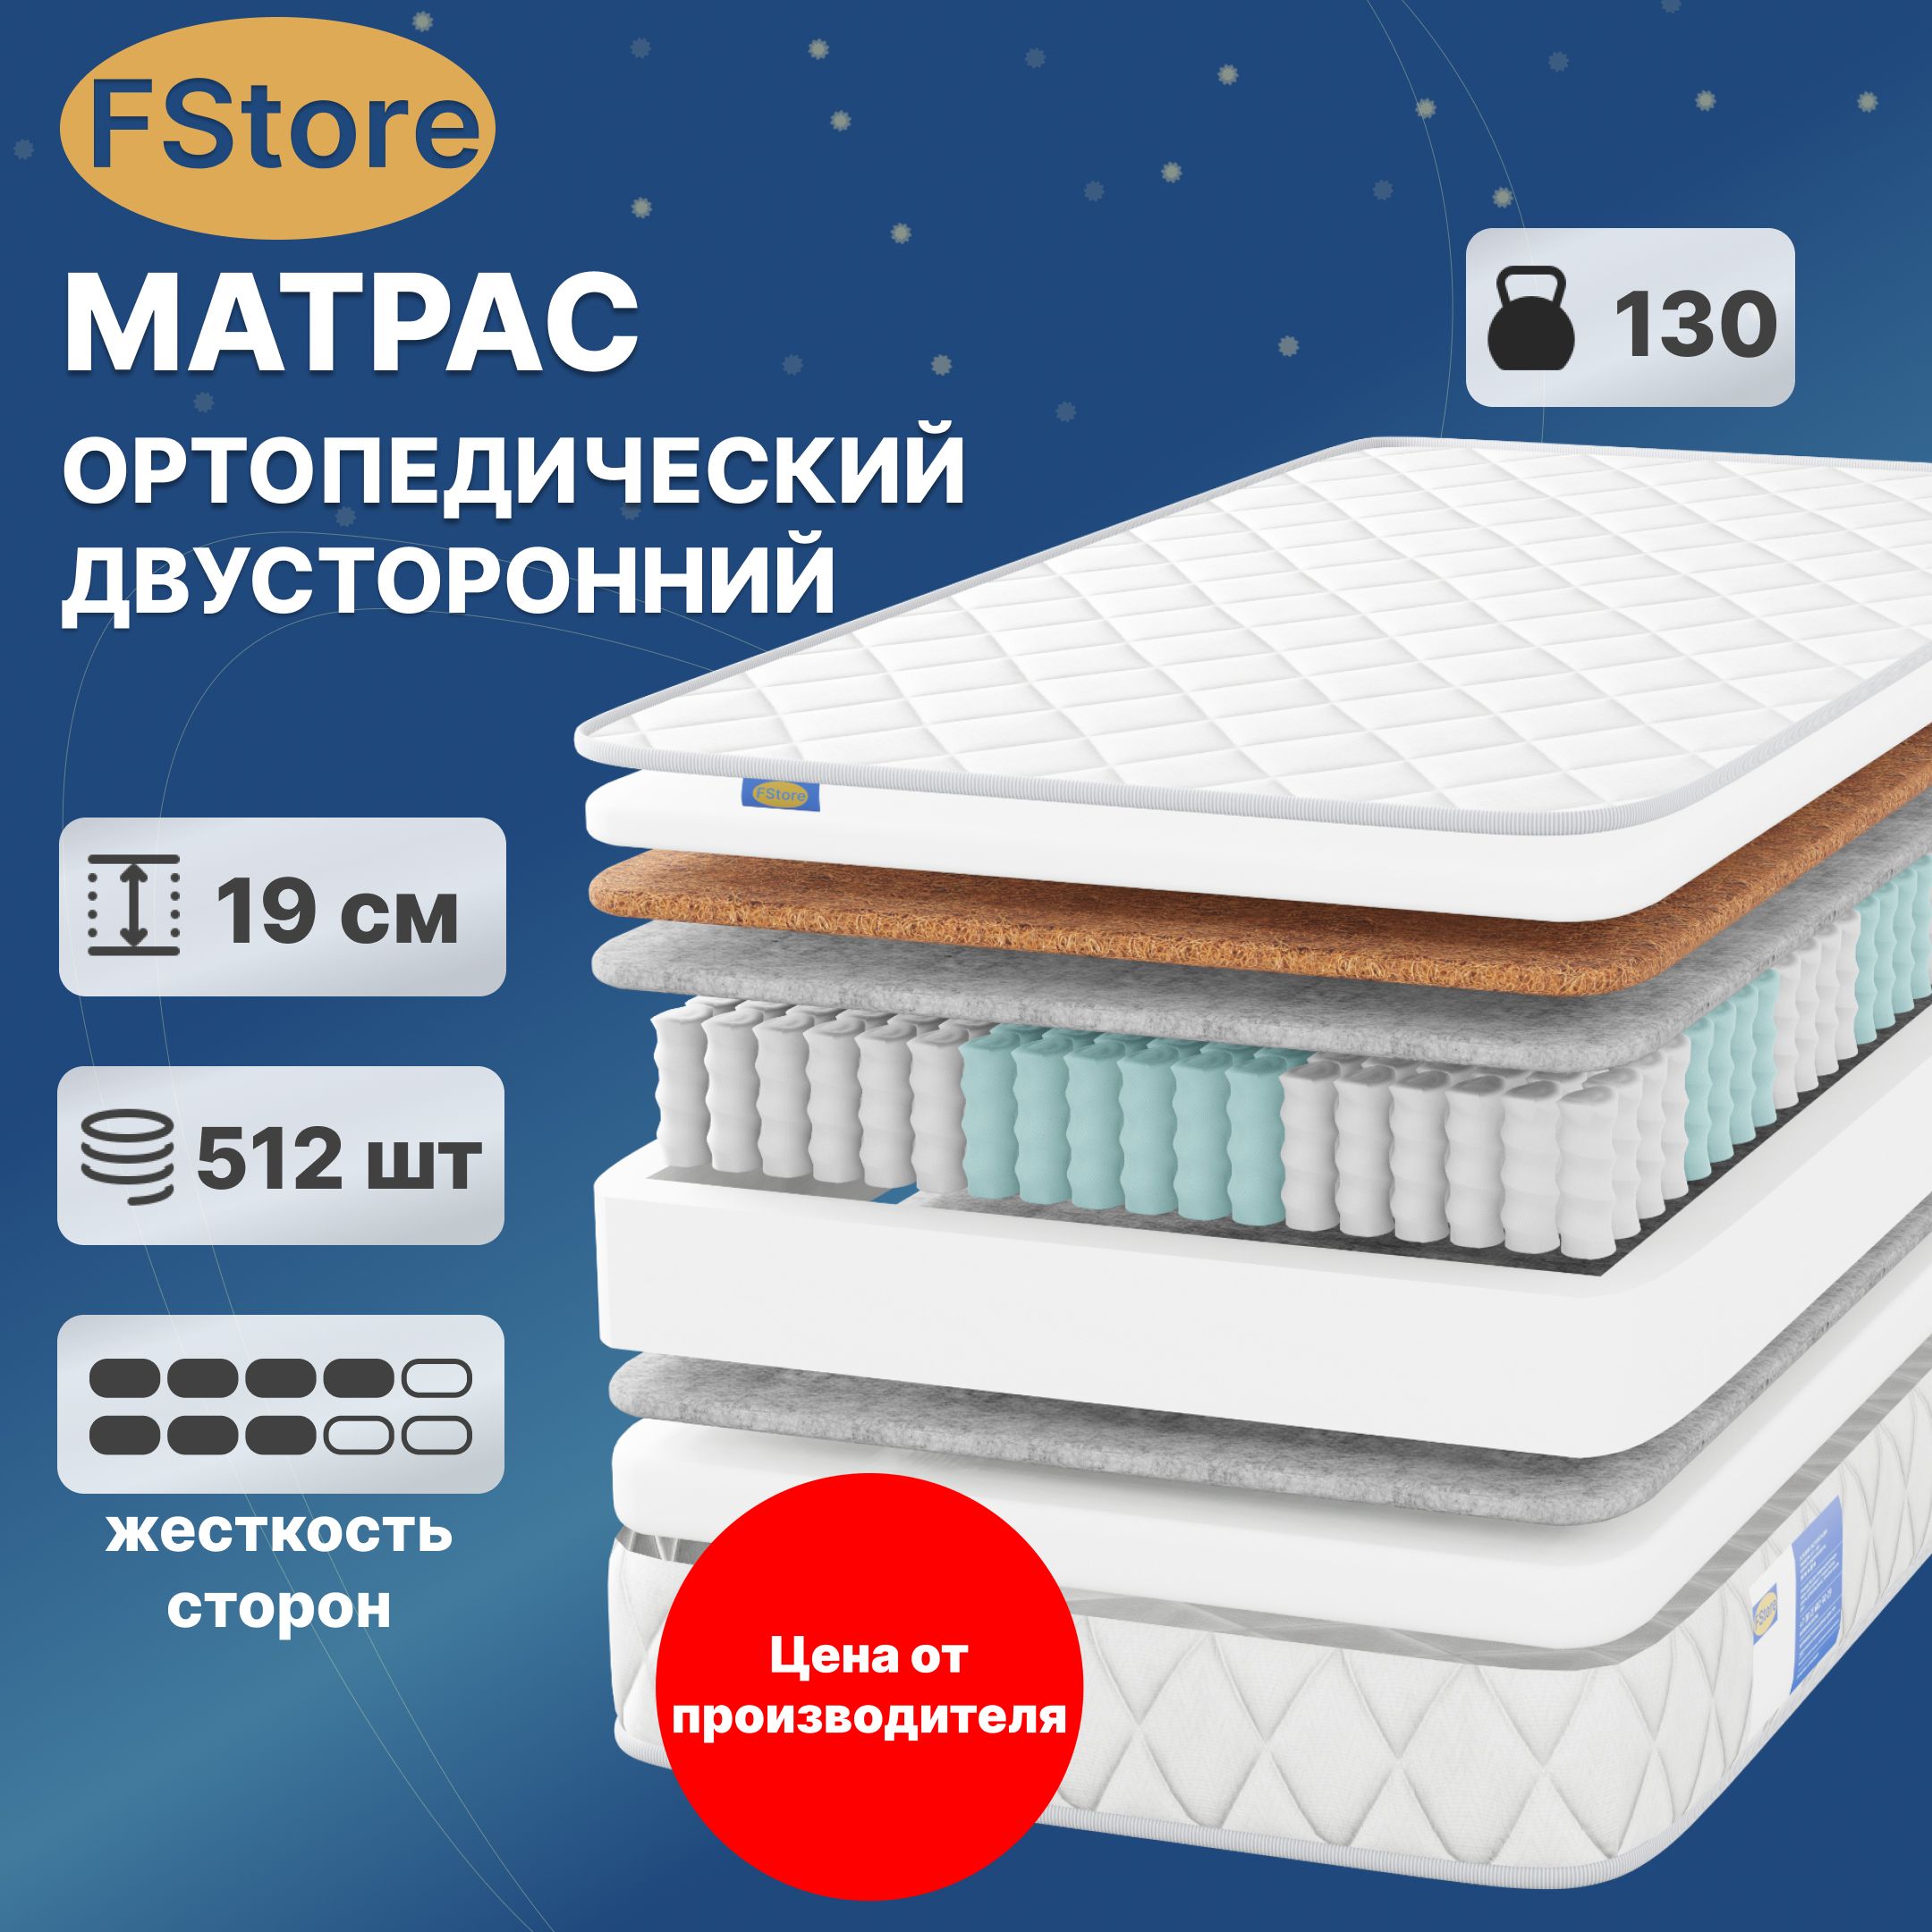 Матрас магазин Европа склад